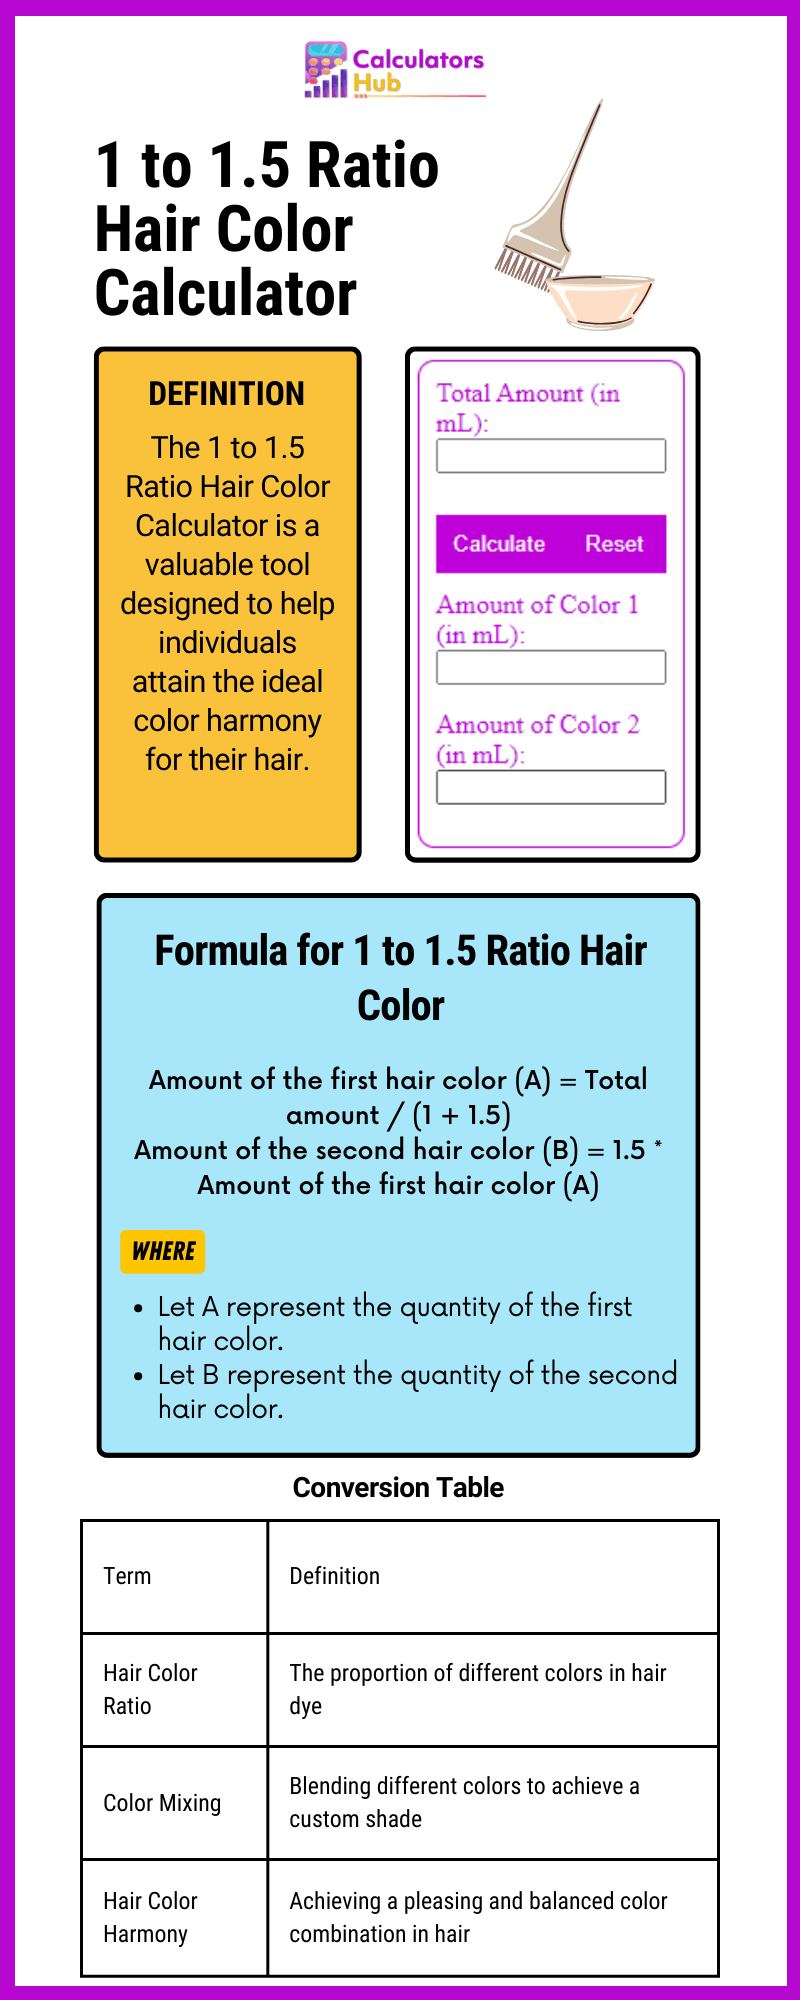 Calculateur de couleur de cheveux ratio 1 à 1.5